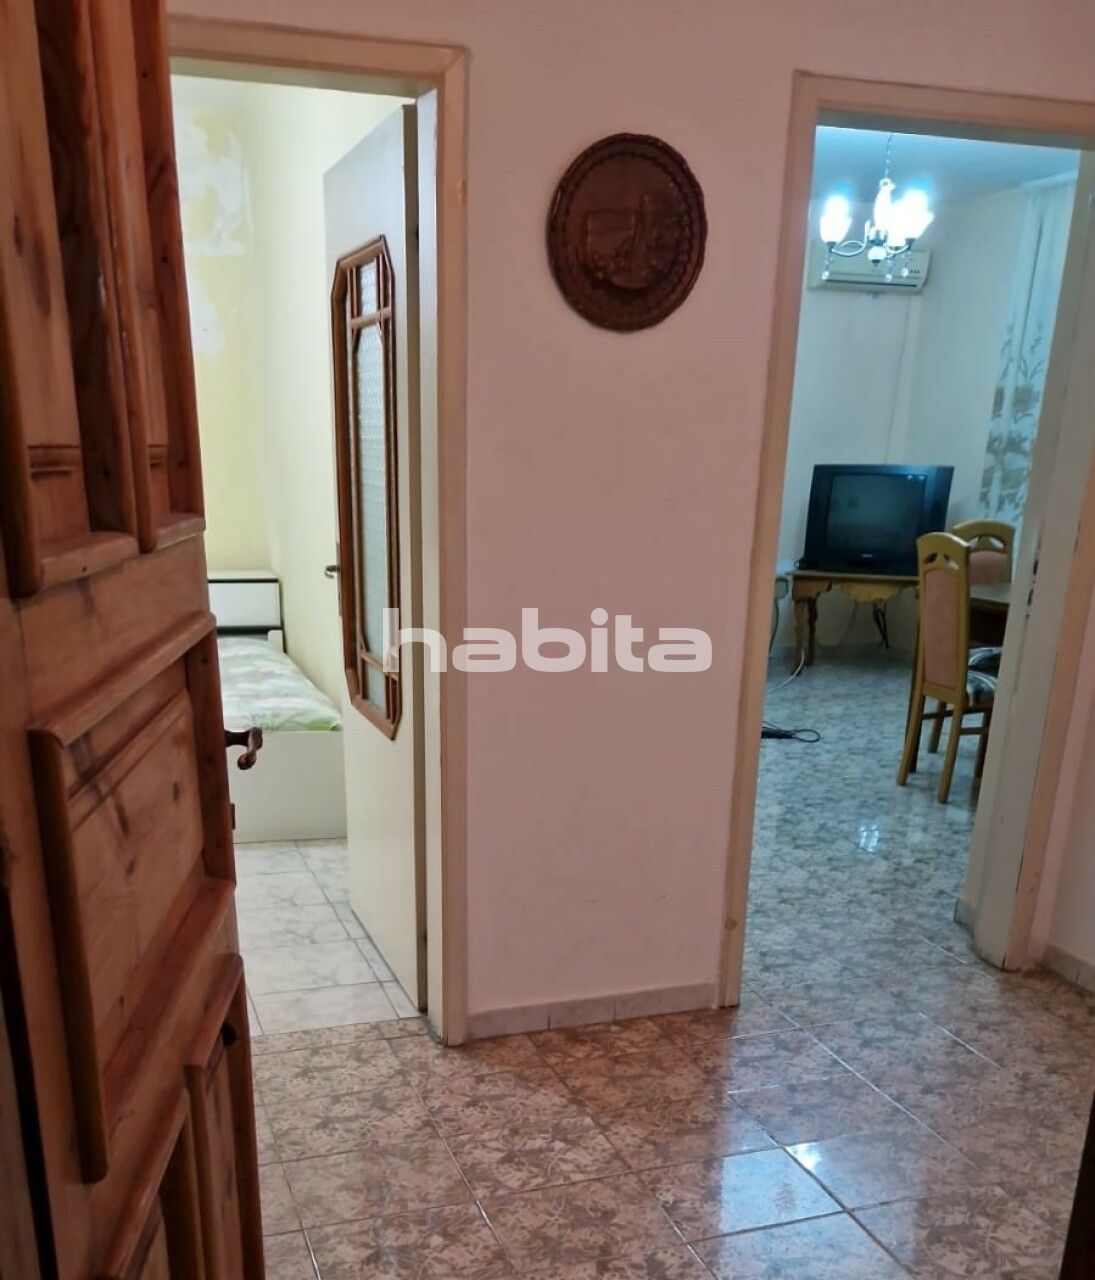 Apartamento en Vlorë, Albania, 76.2 m2 - imagen 1